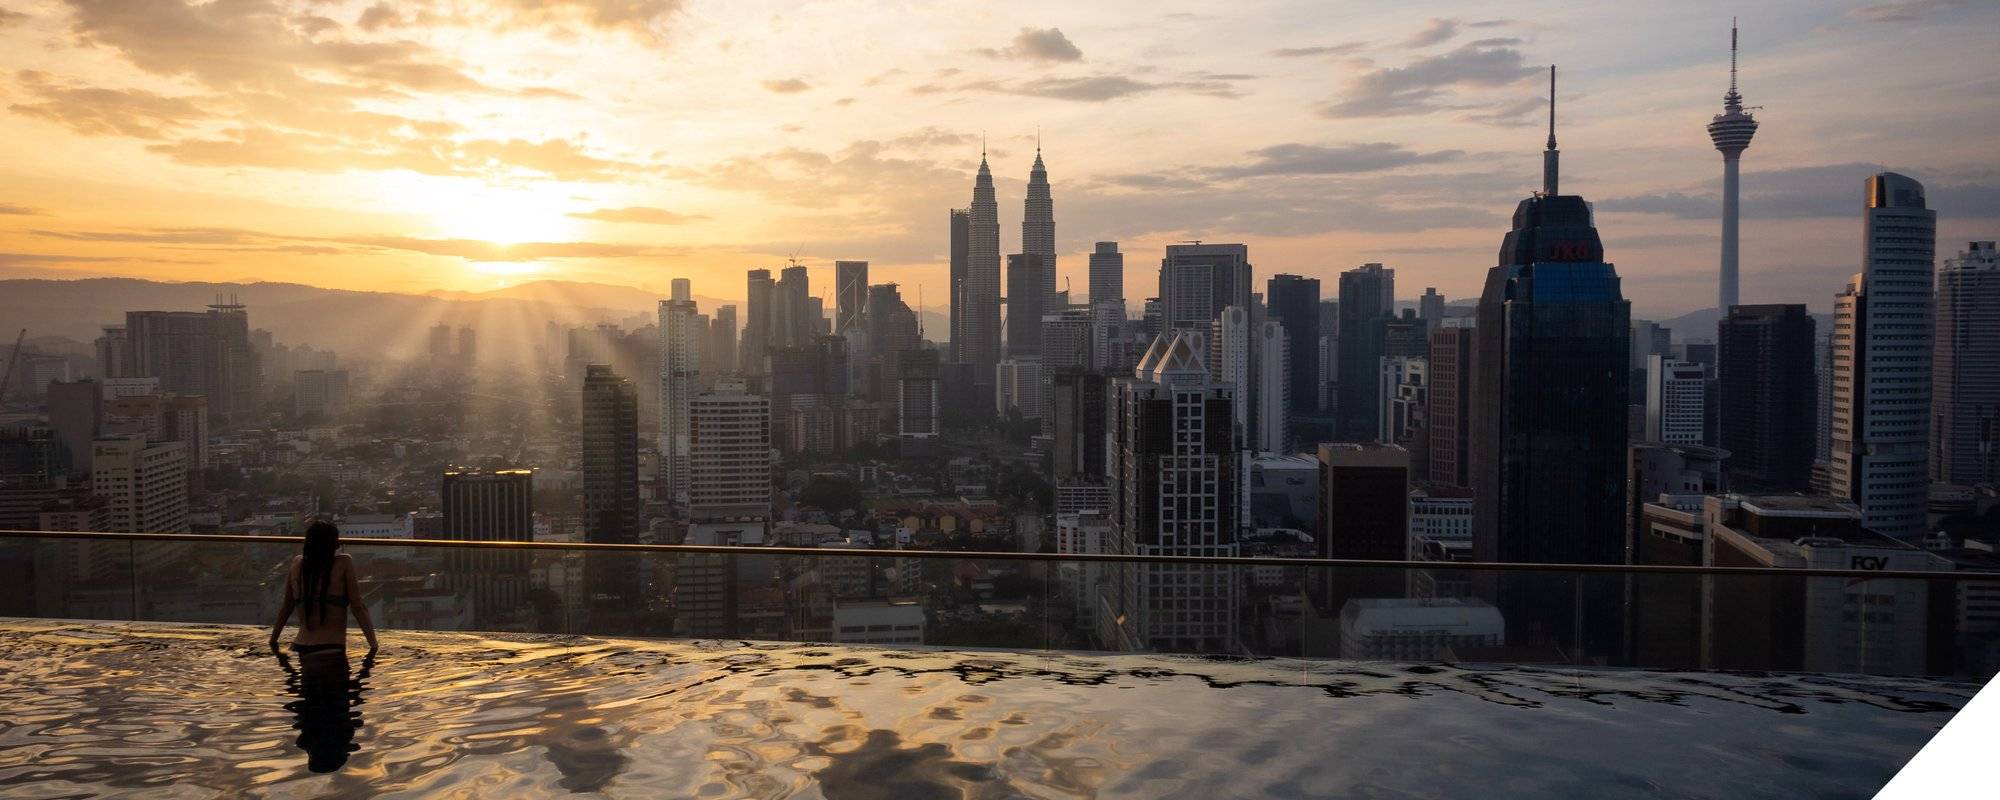 Regalia KL - The best view of Kuala Lumpur [EN/DE]